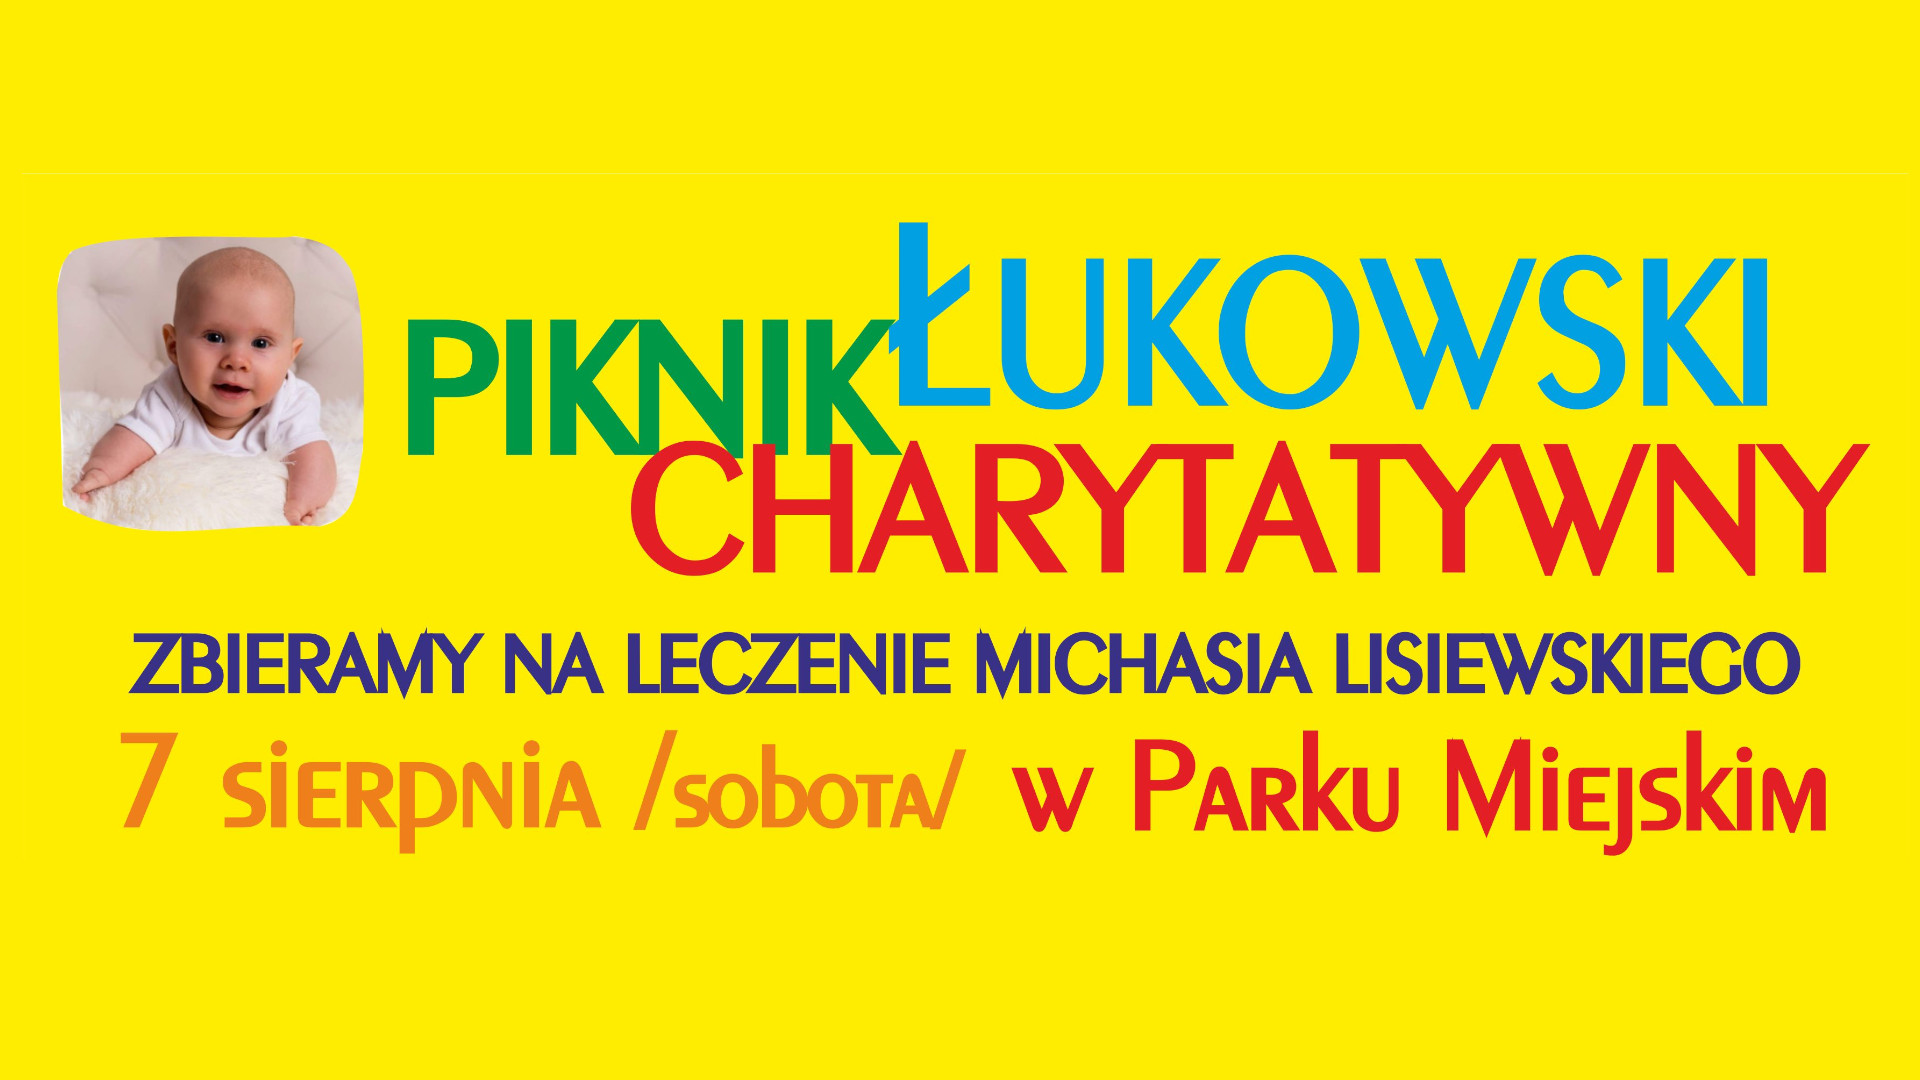 Charytatywny piknik dla Michasia Lisiewskiego